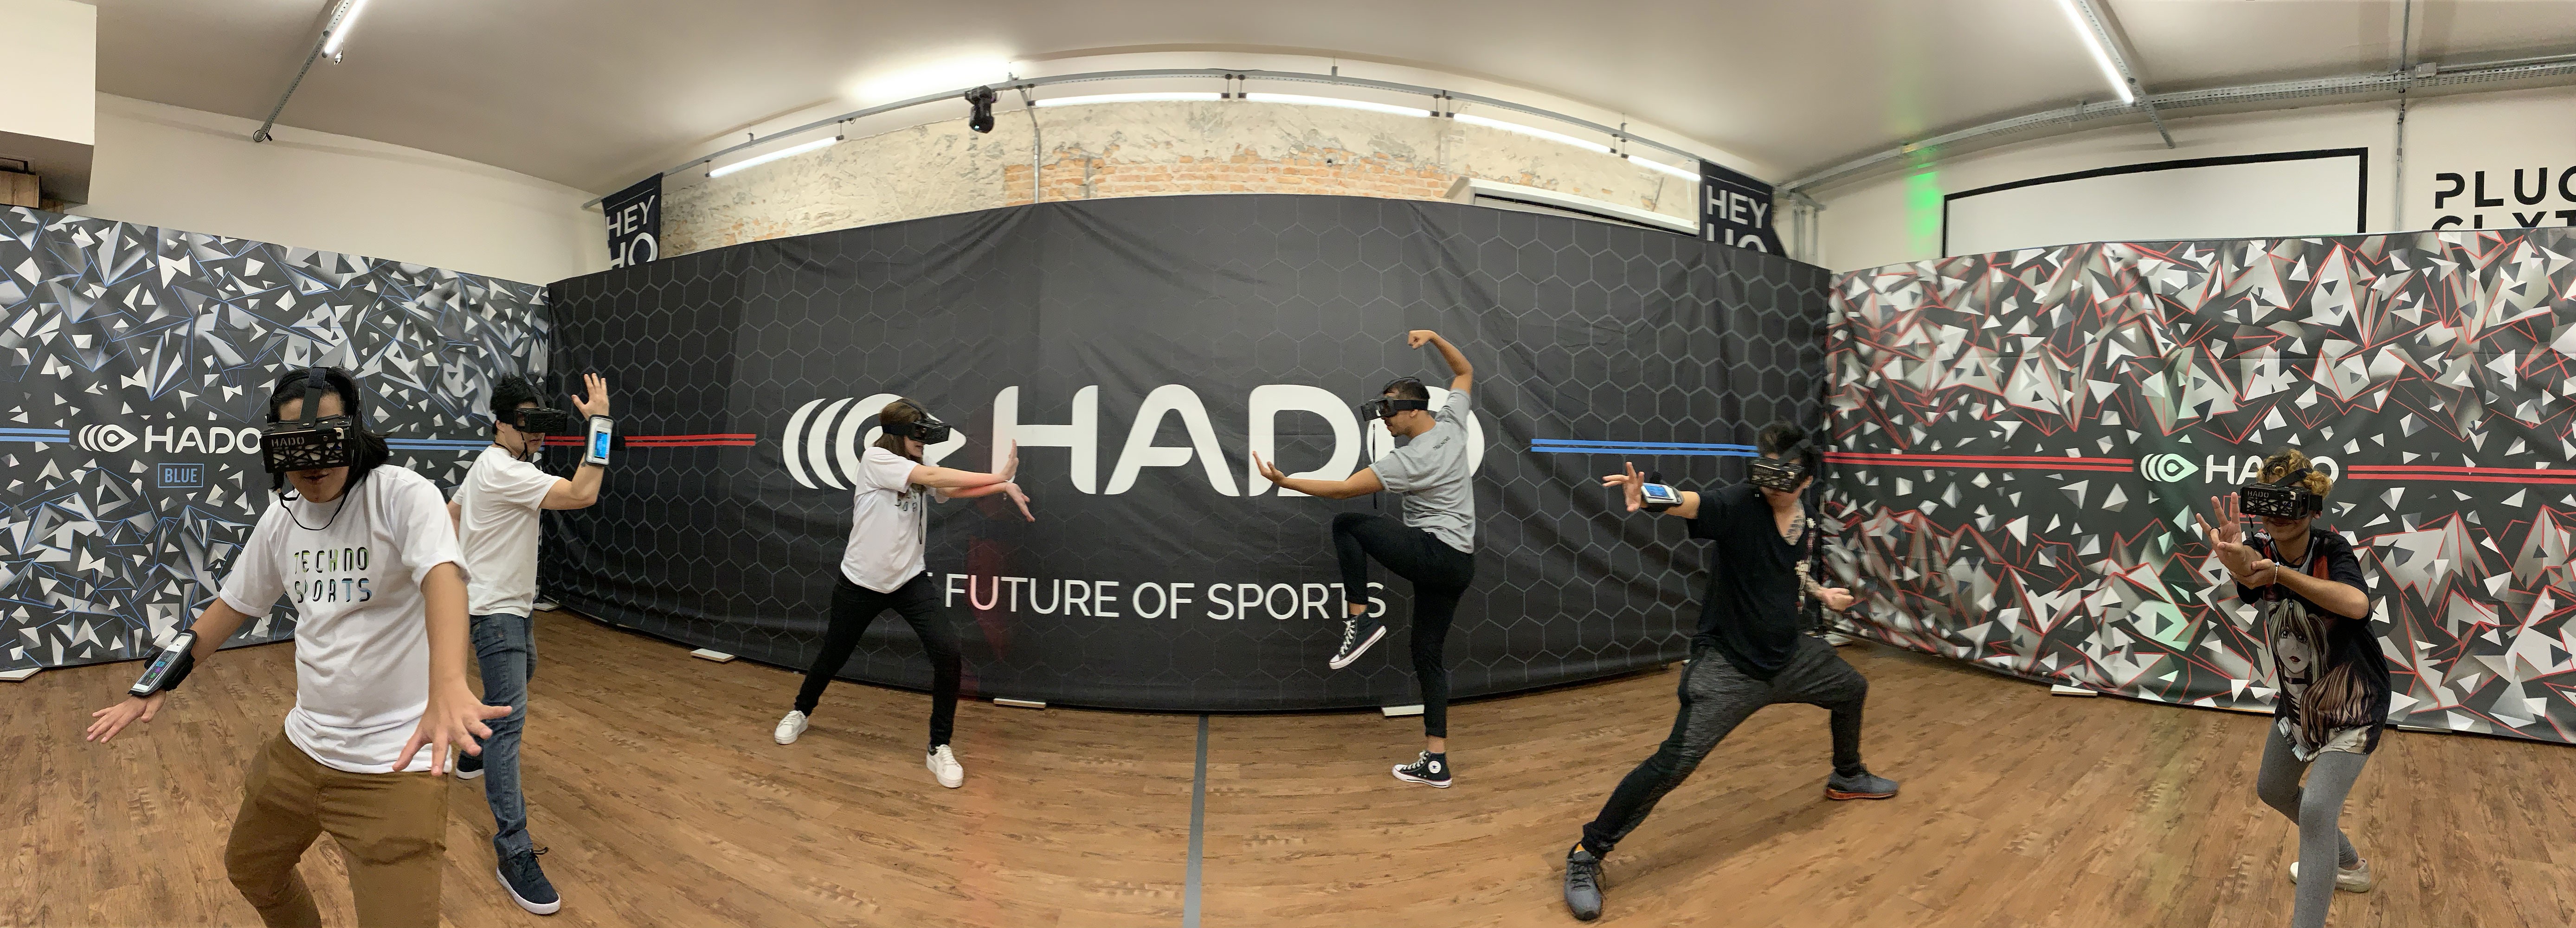 Após sucesso na Ásia, primeiro techno sport chega ao Brasil. Acima: pessoas interagem com HADO em evento em São Paulo (Foto: Divulgação)